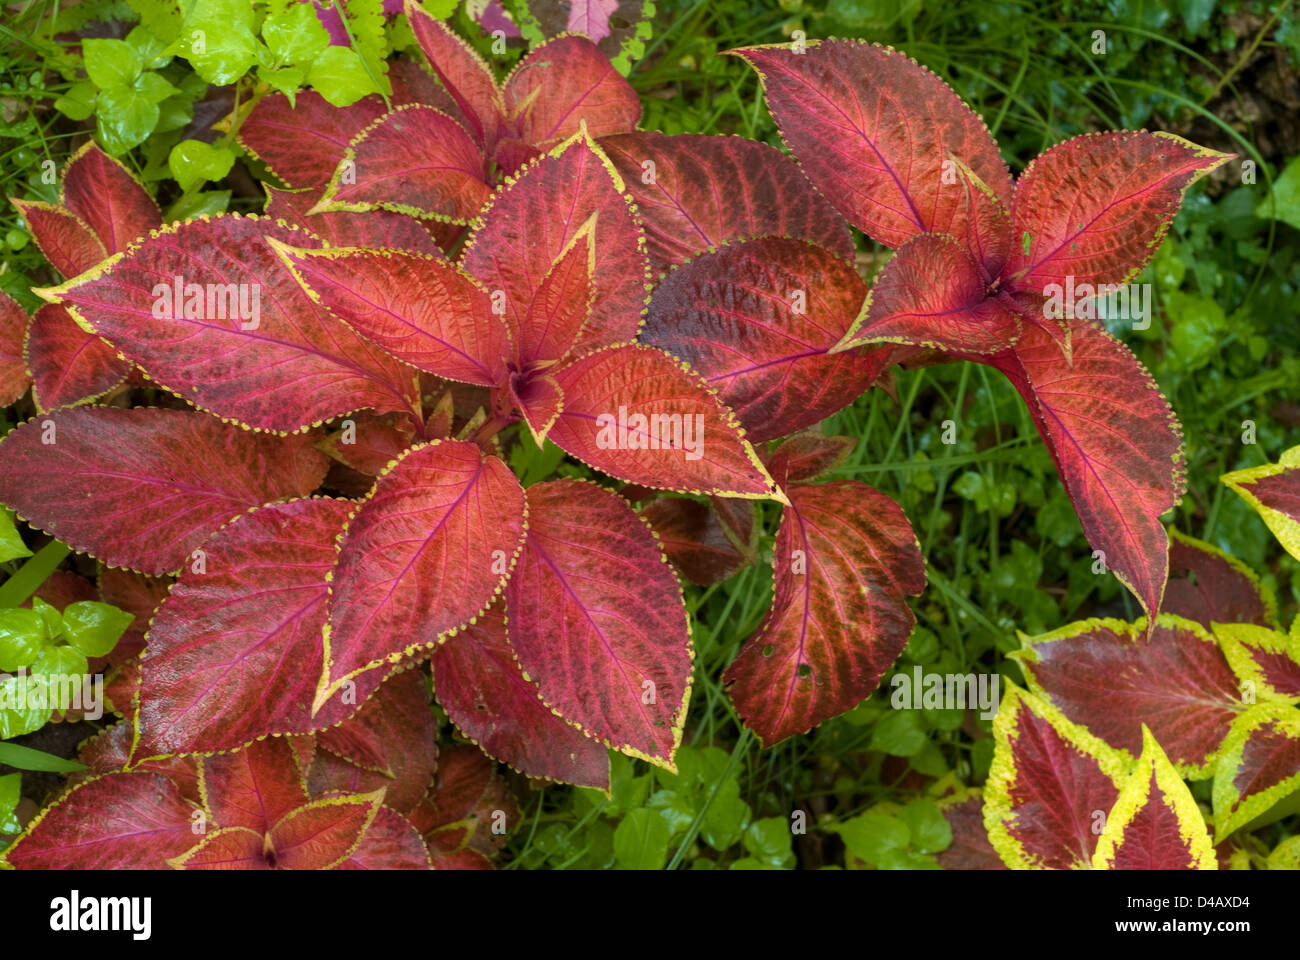 Coleus blumei Hybrid Lamiaceae Stock Photo